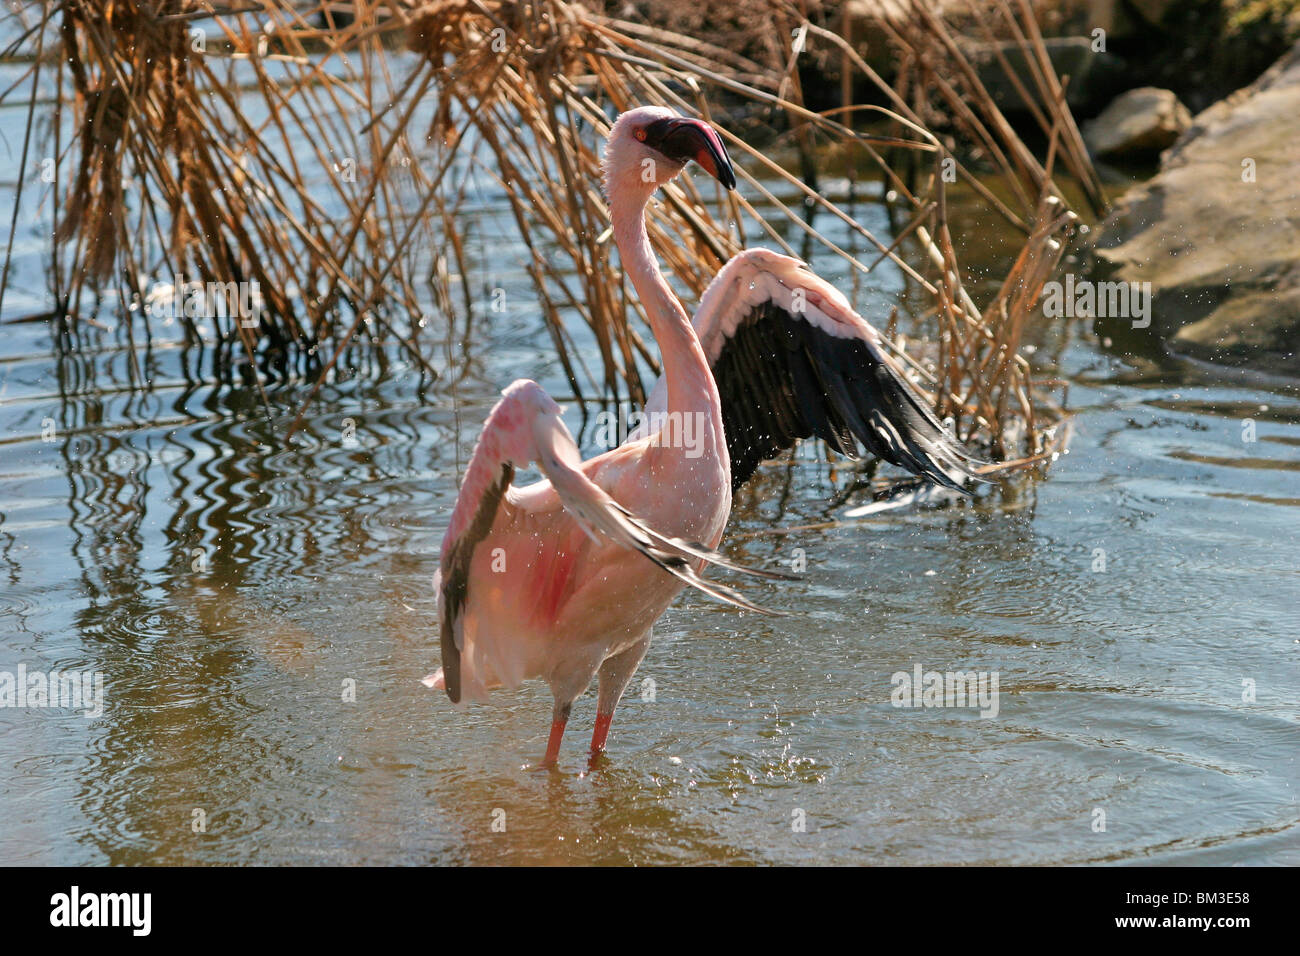 badendet Flamingo / bathing Flamingo Stock Photo